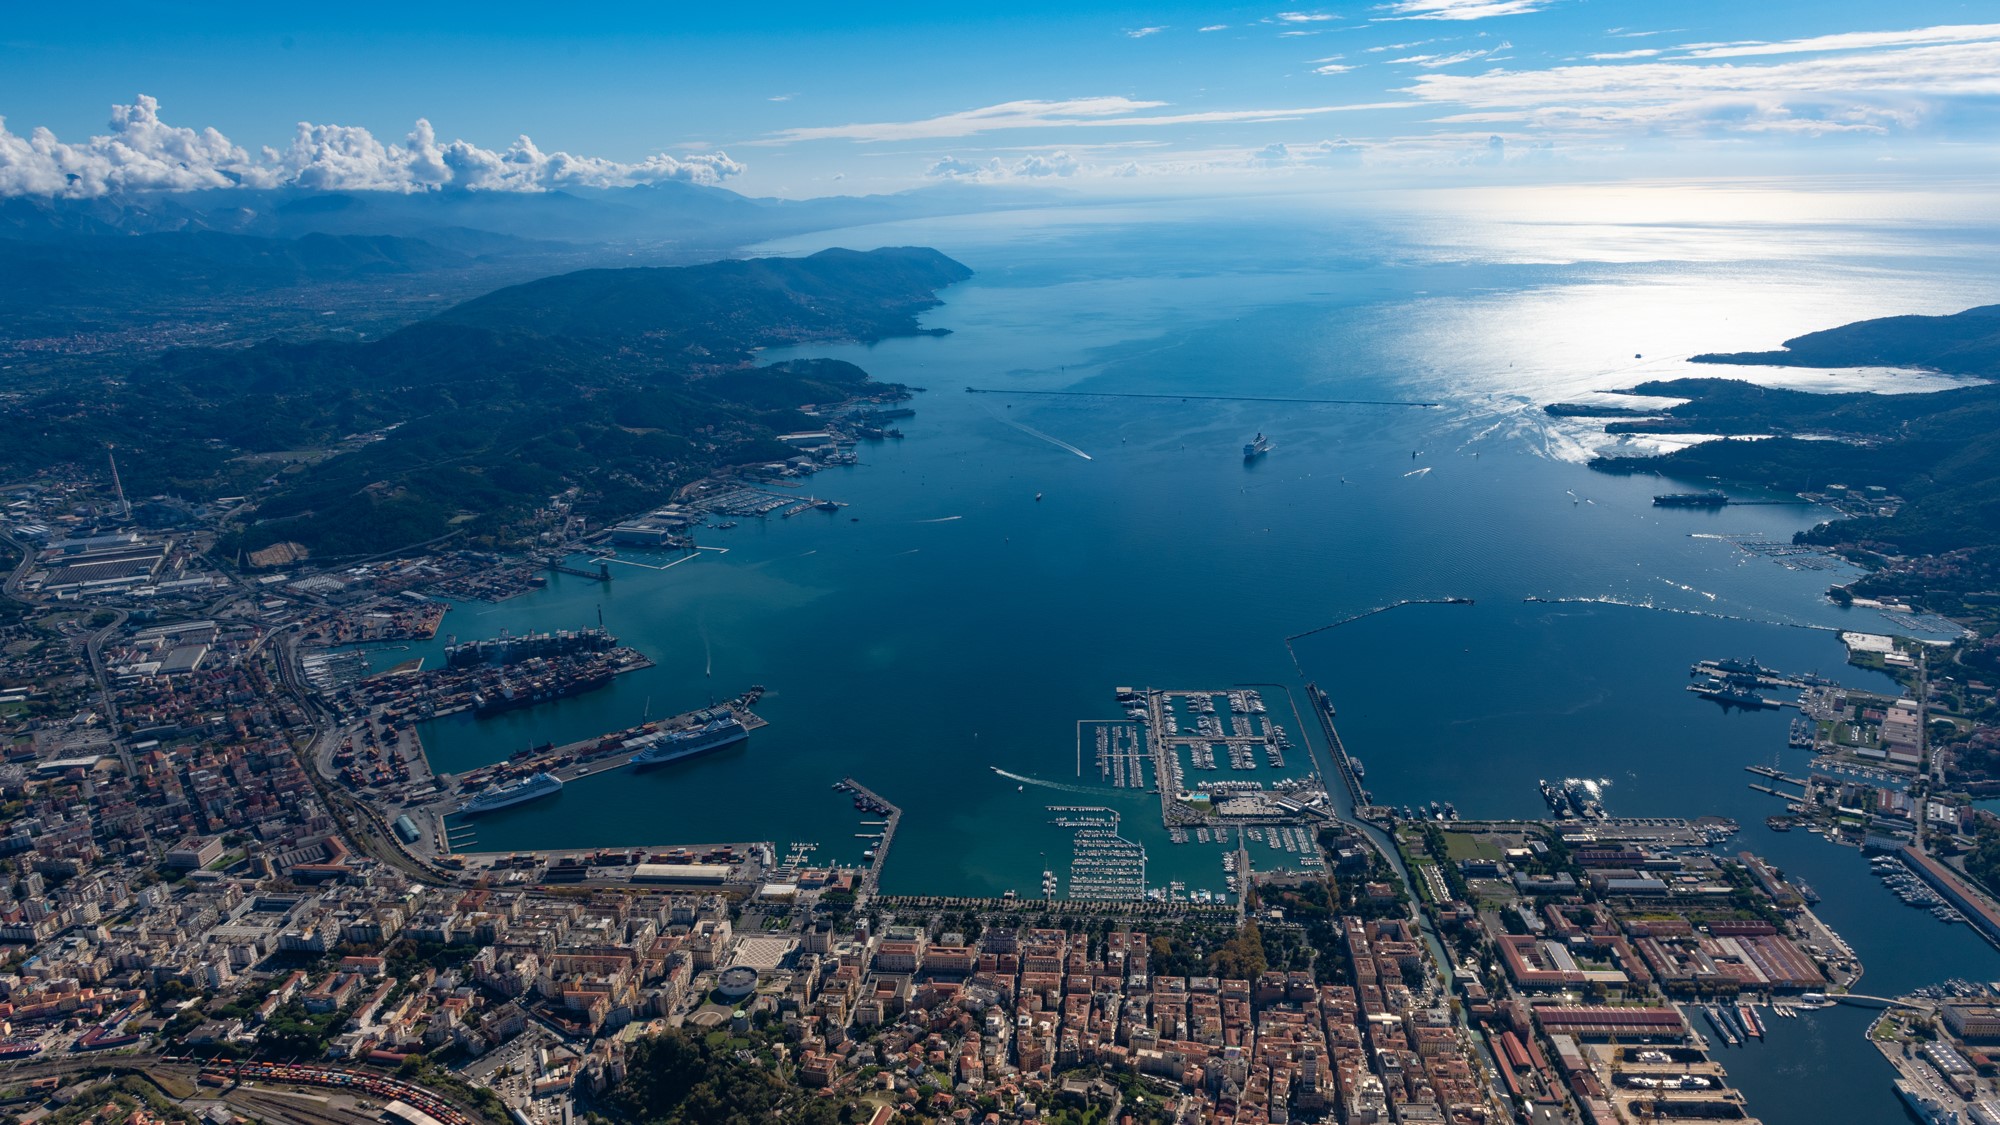 Picture of the port of La Spezia